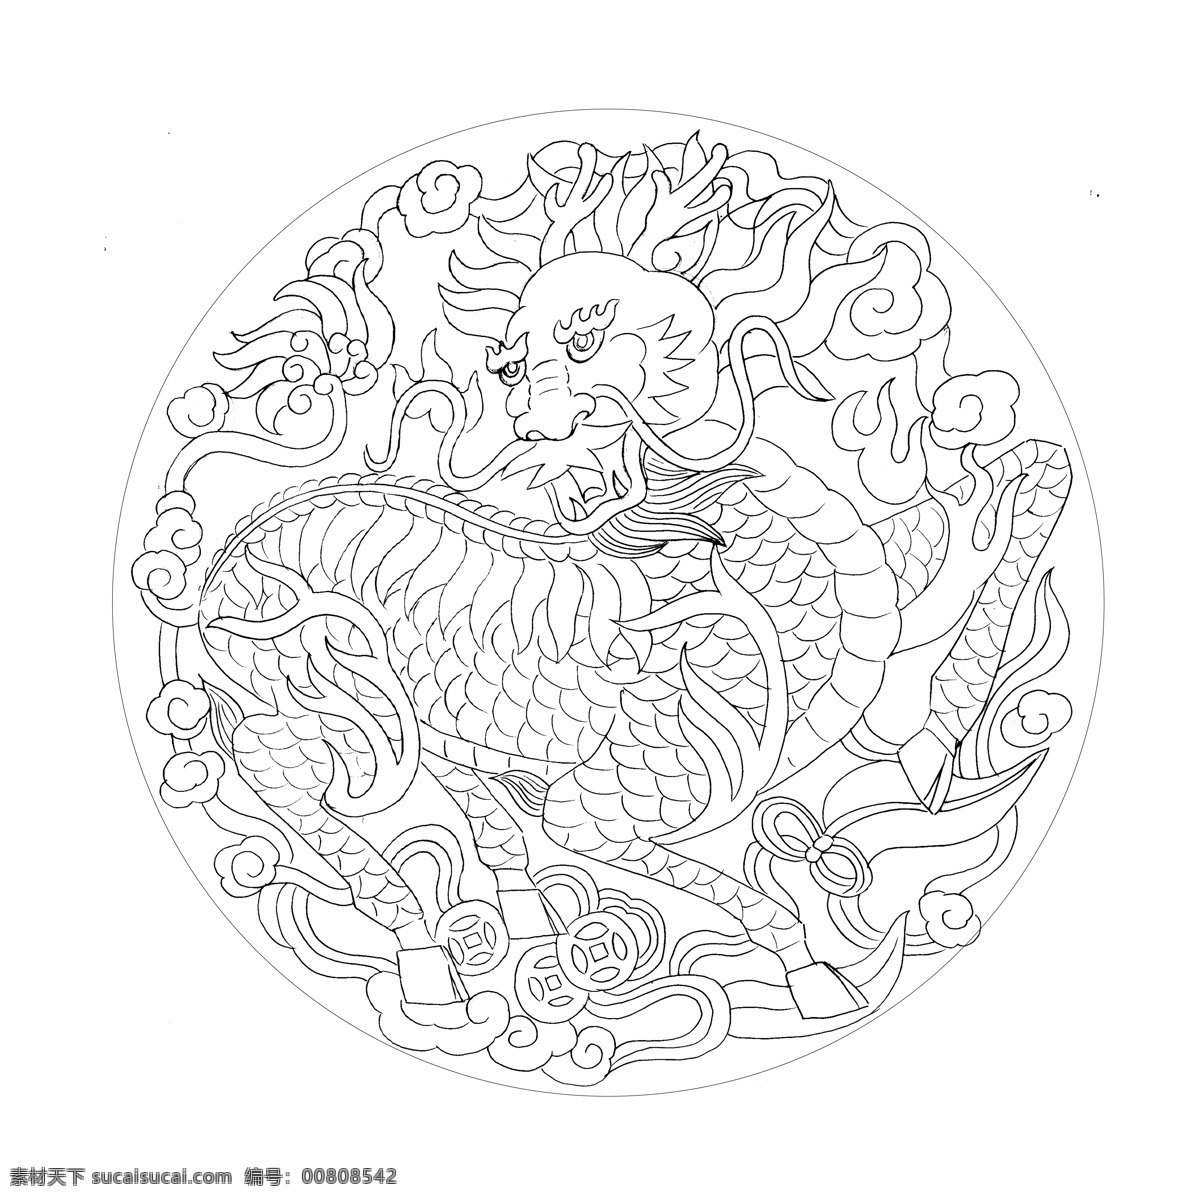 小麒麟 圆形 麒麟 传统图案 吉祥图案 浮雕线稿 中式花纹 文化艺术 绘画书法